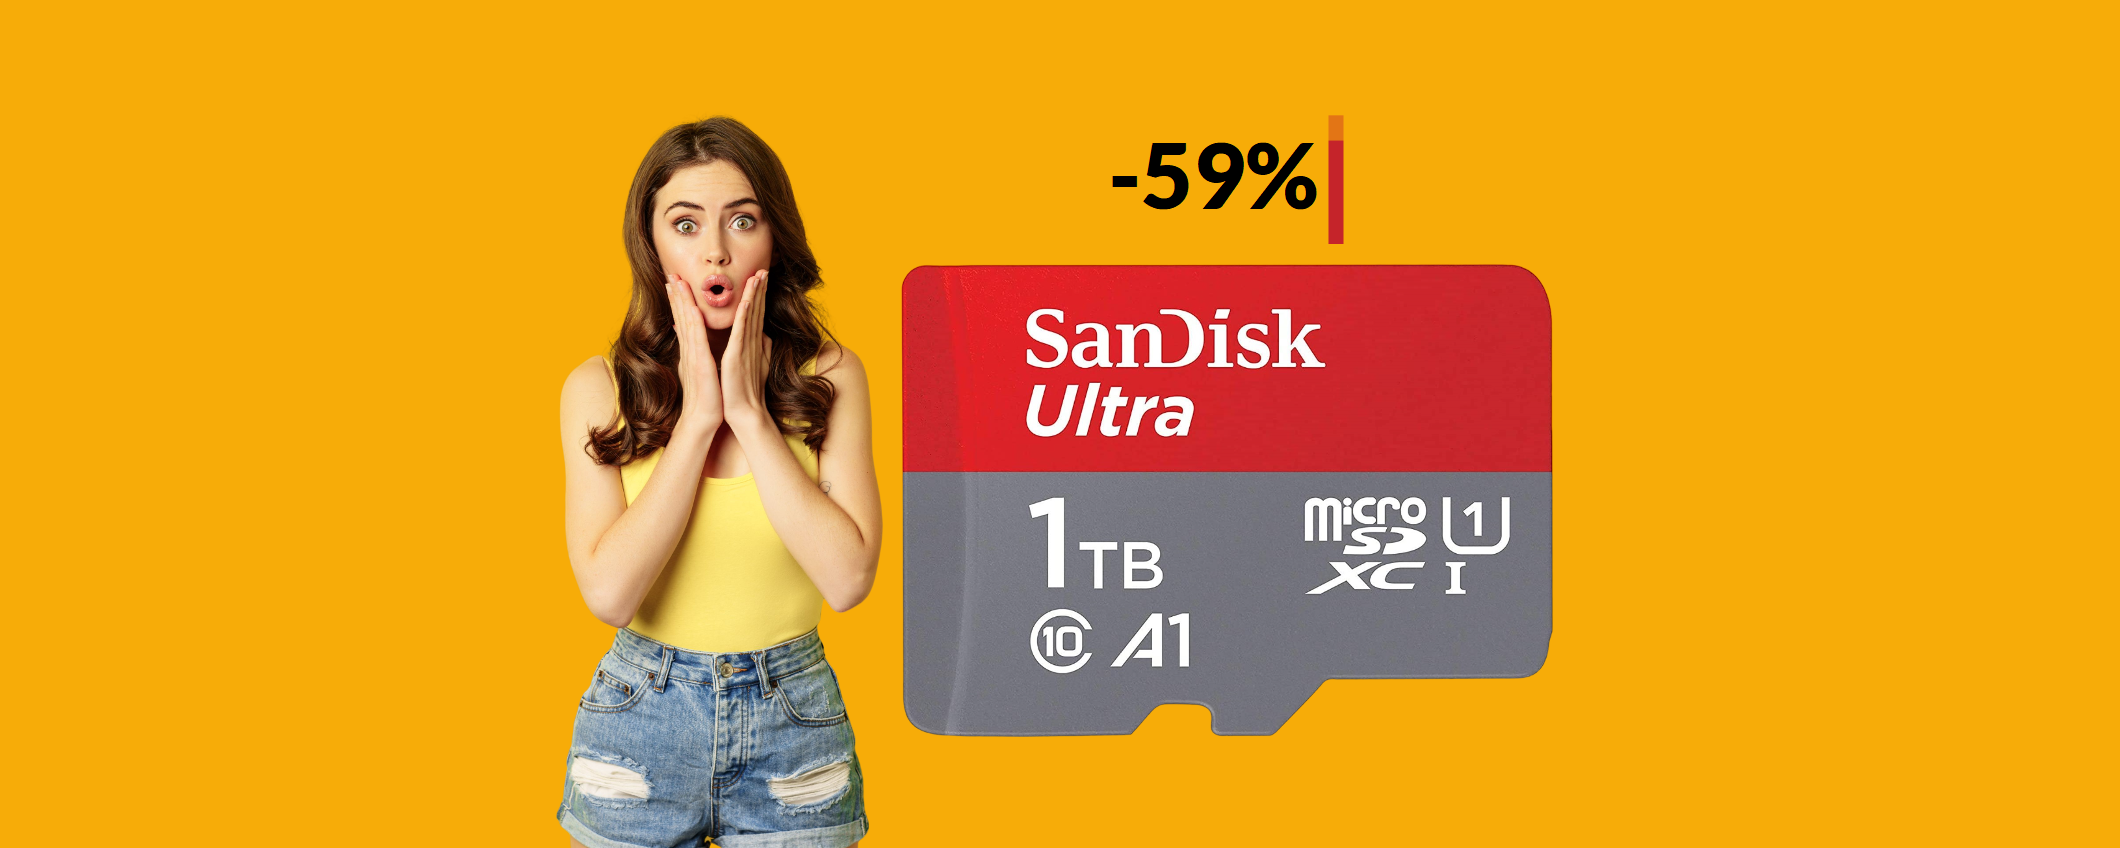 MicroSD SanDisk 1TB a meno di METÀ PREZZO: non finisce mai